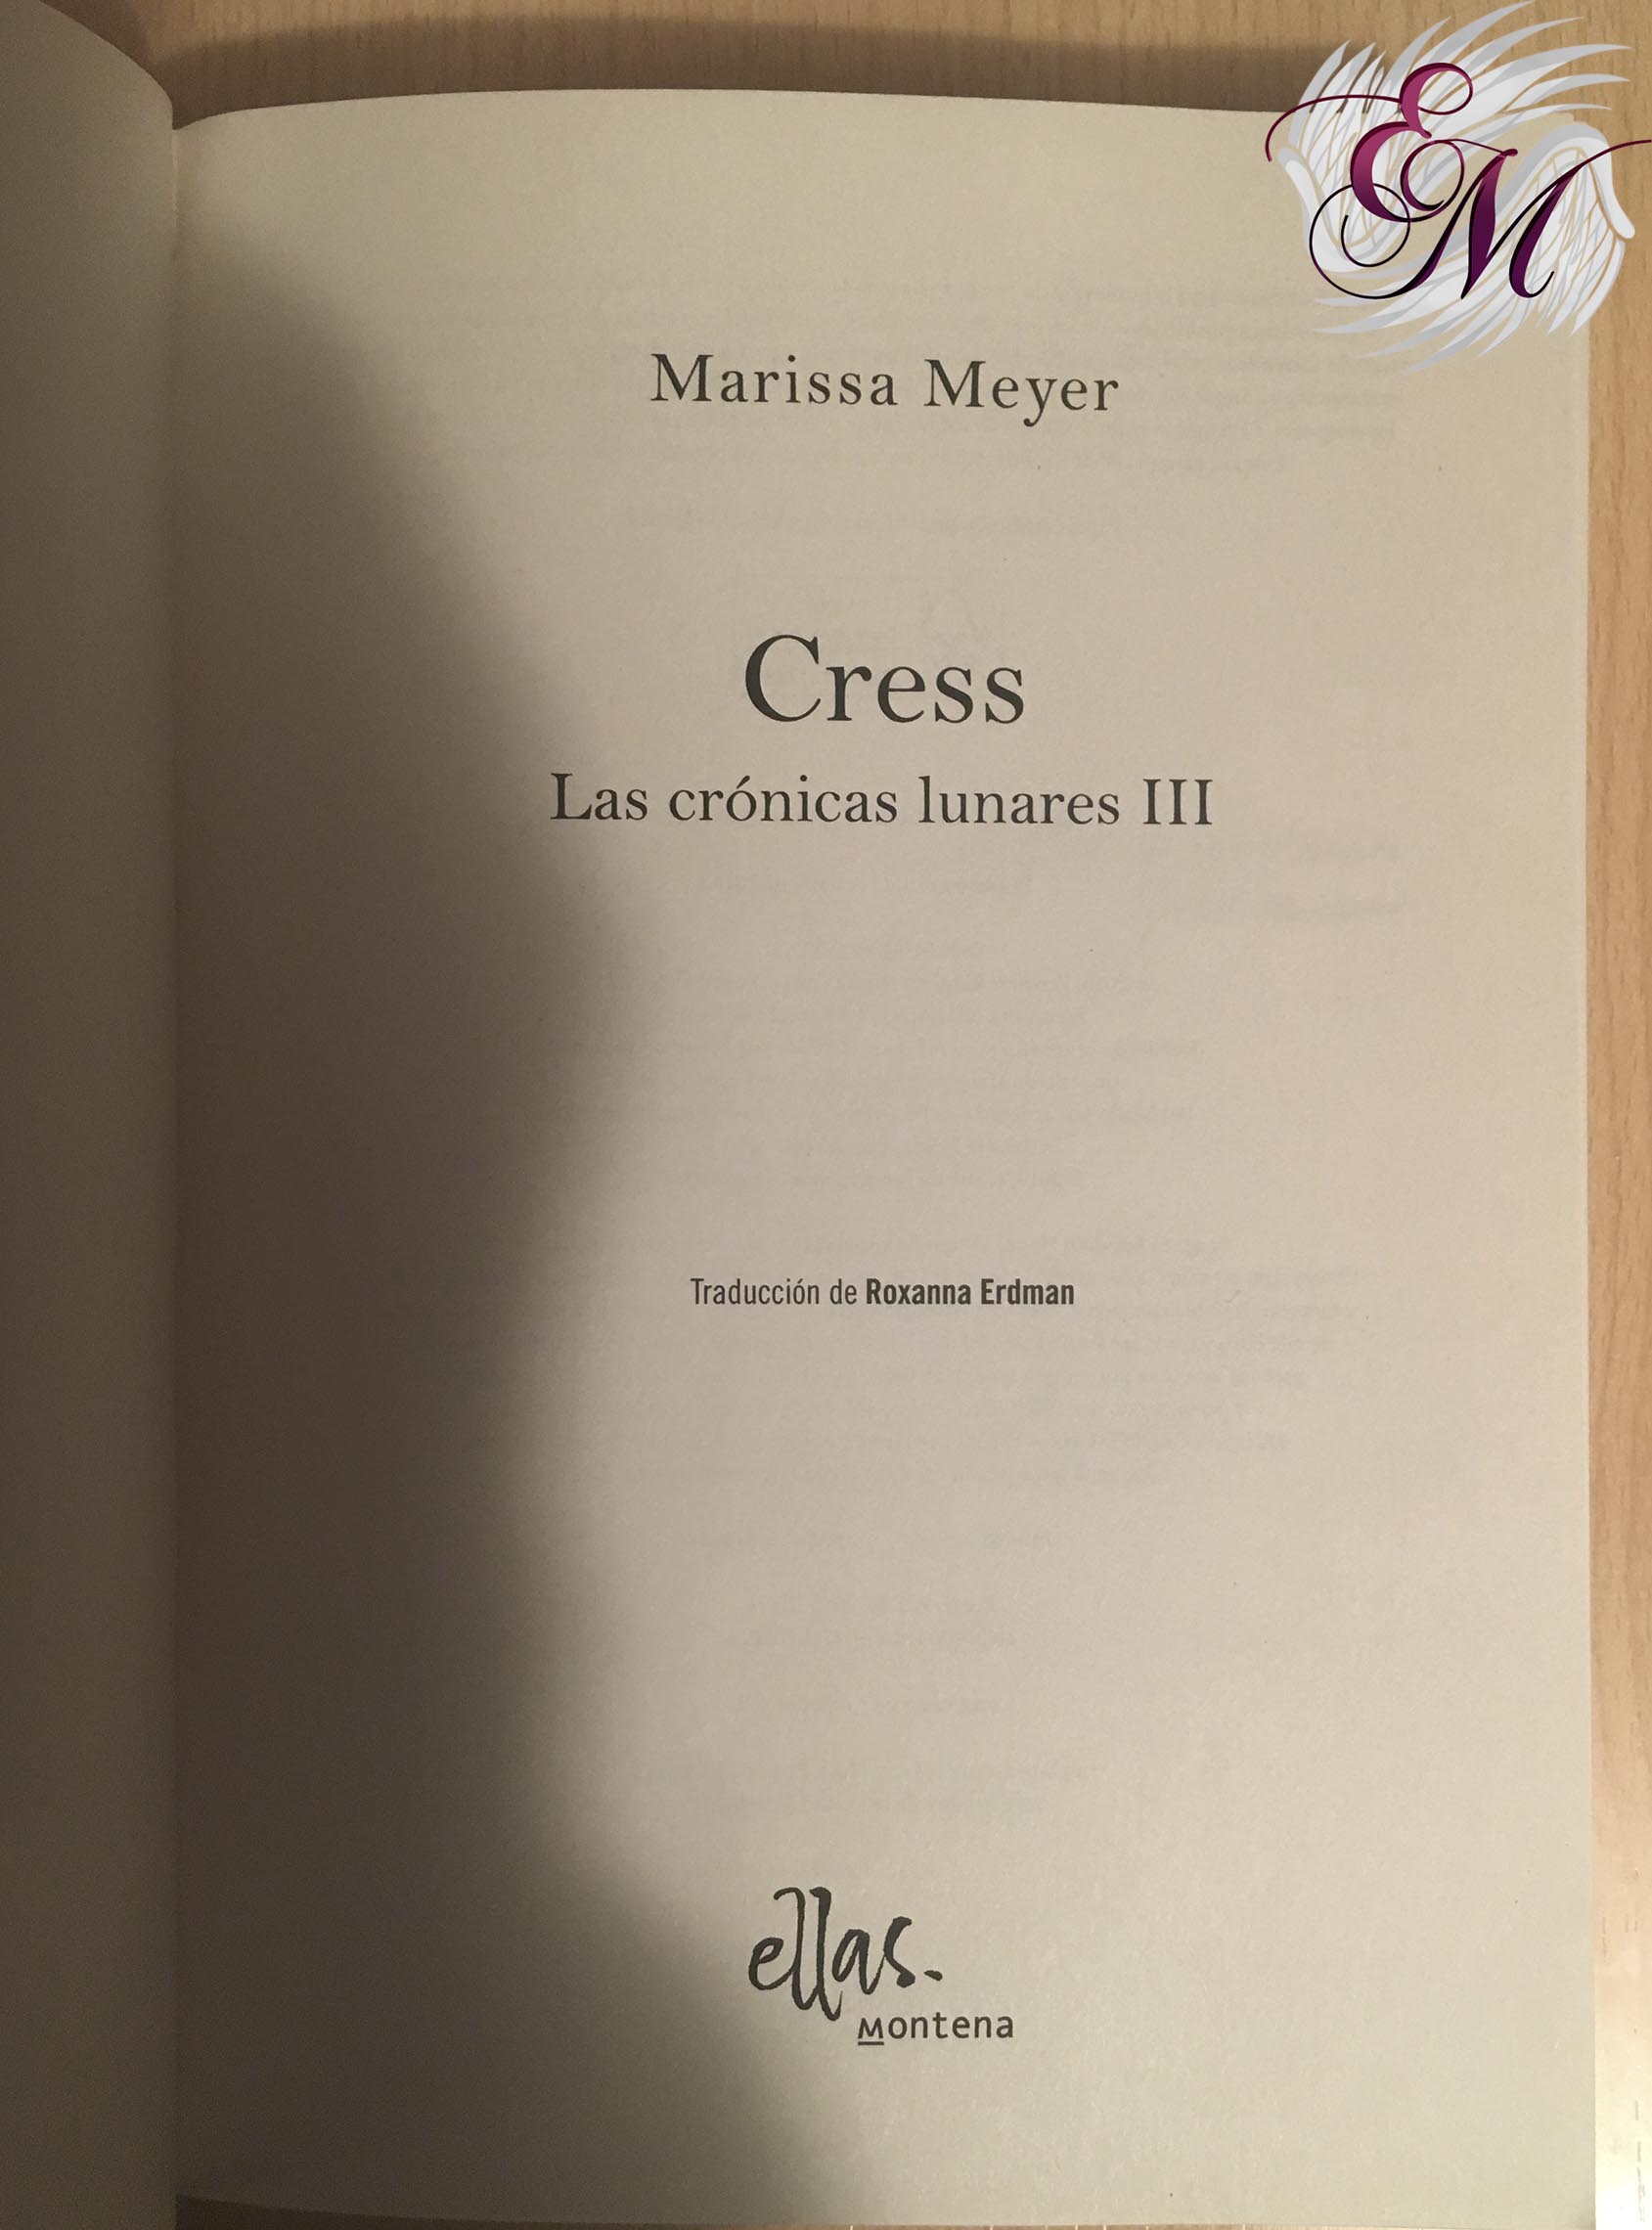 Cress, de Marissa Meyer - Reseña